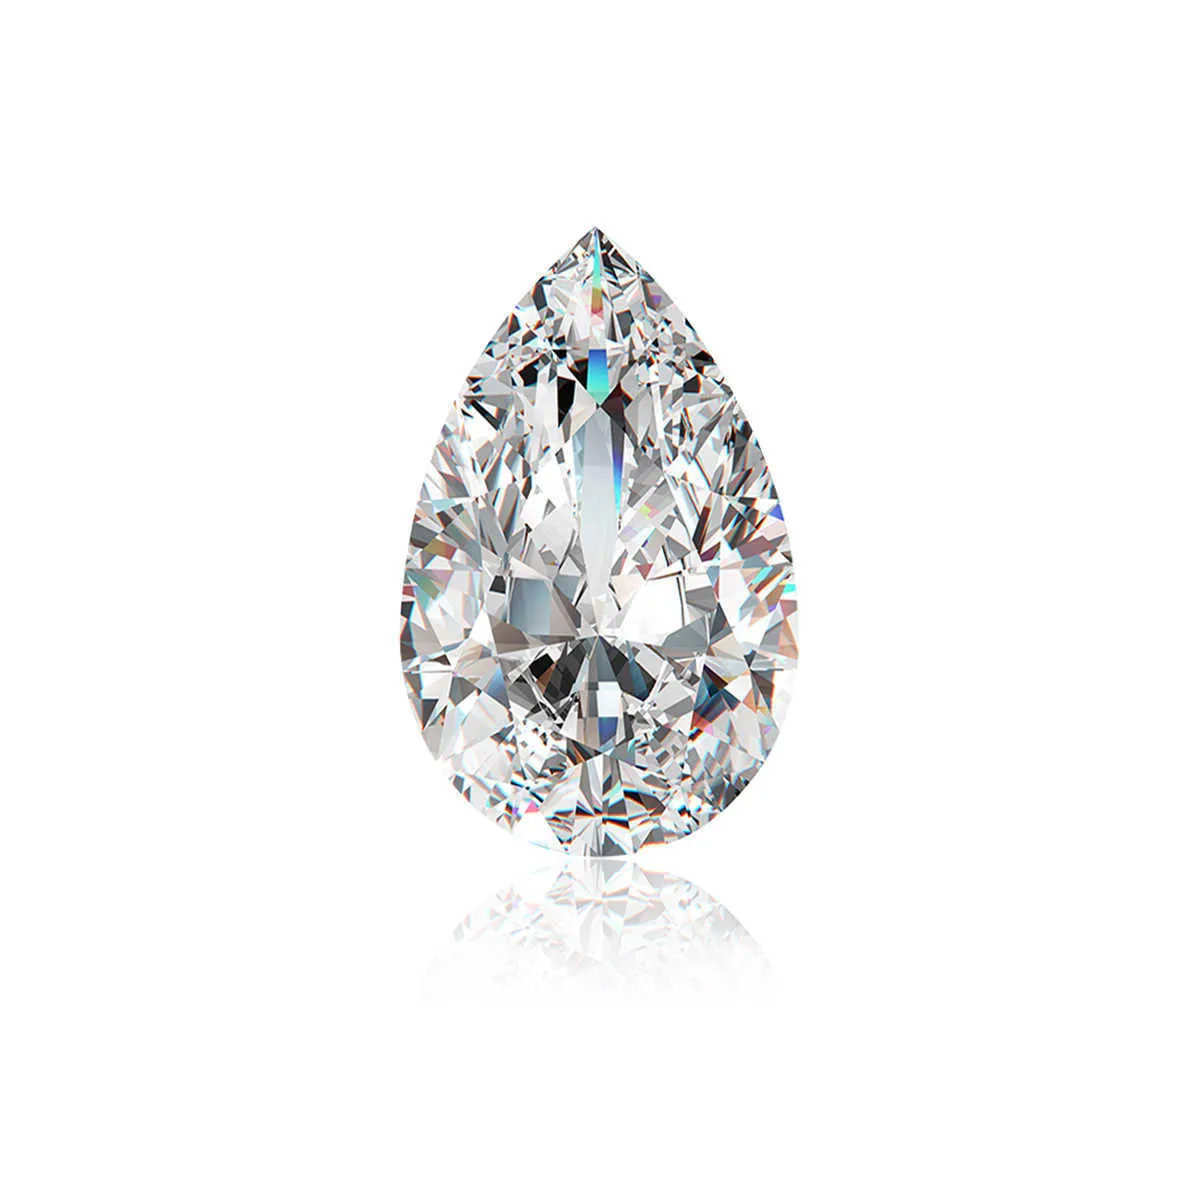 Szjinao pierres précieuses en vrac pierre 0,35ct à 6ct D couleur VVS1 diamant en forme de poire pour bijoux Pass Moissanite testeur pierres précieuses